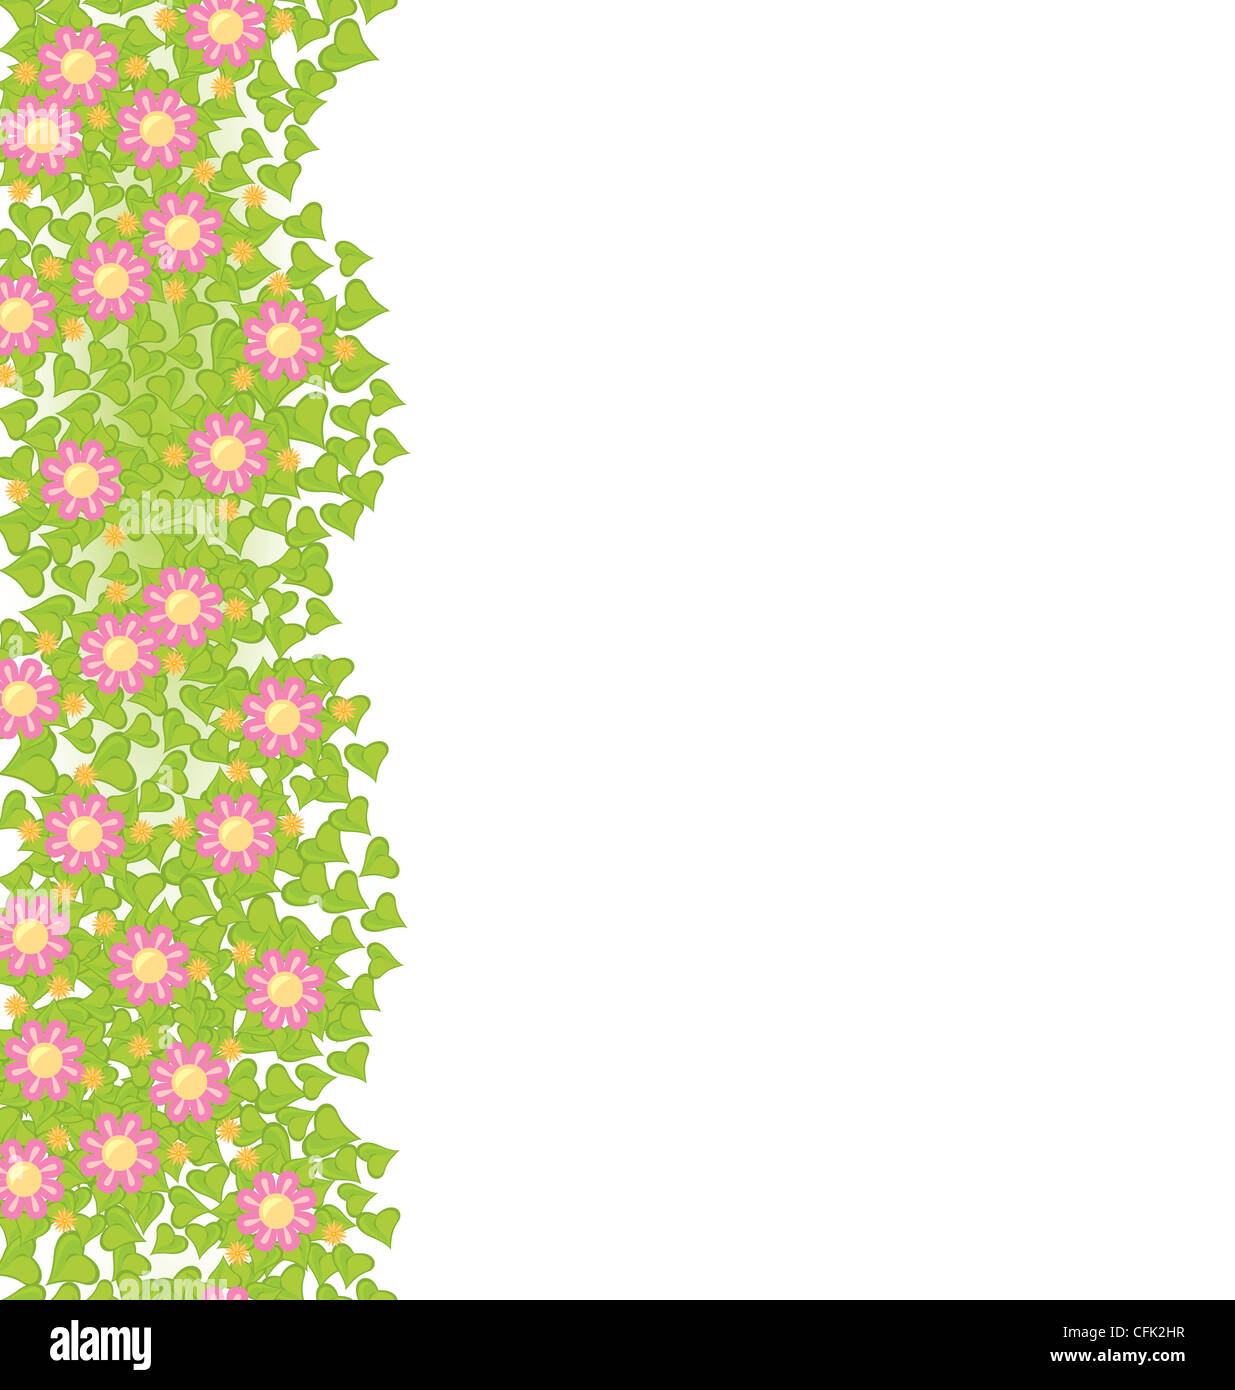 L'élément transparent décoratif avec des fleurs roses sur feuilles vertes vector illustration Banque D'Images